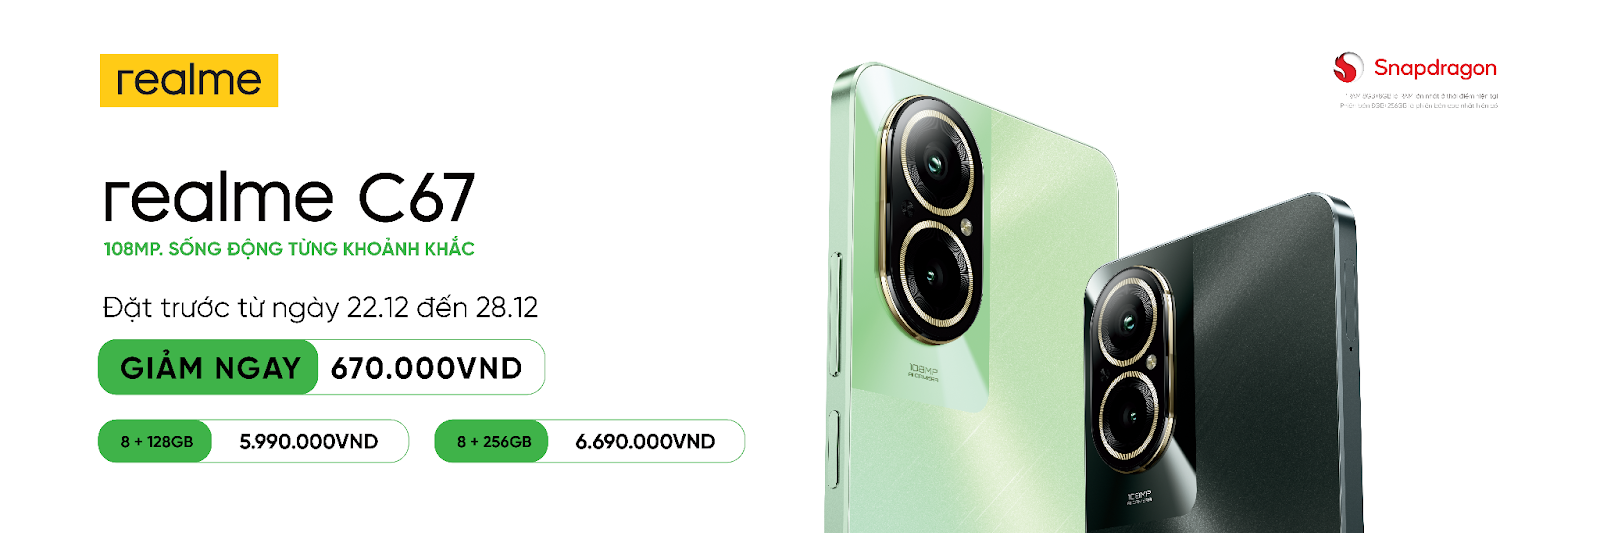 Điện thoại Realme C67 4G ra mắt tại thị trường Việt Nam